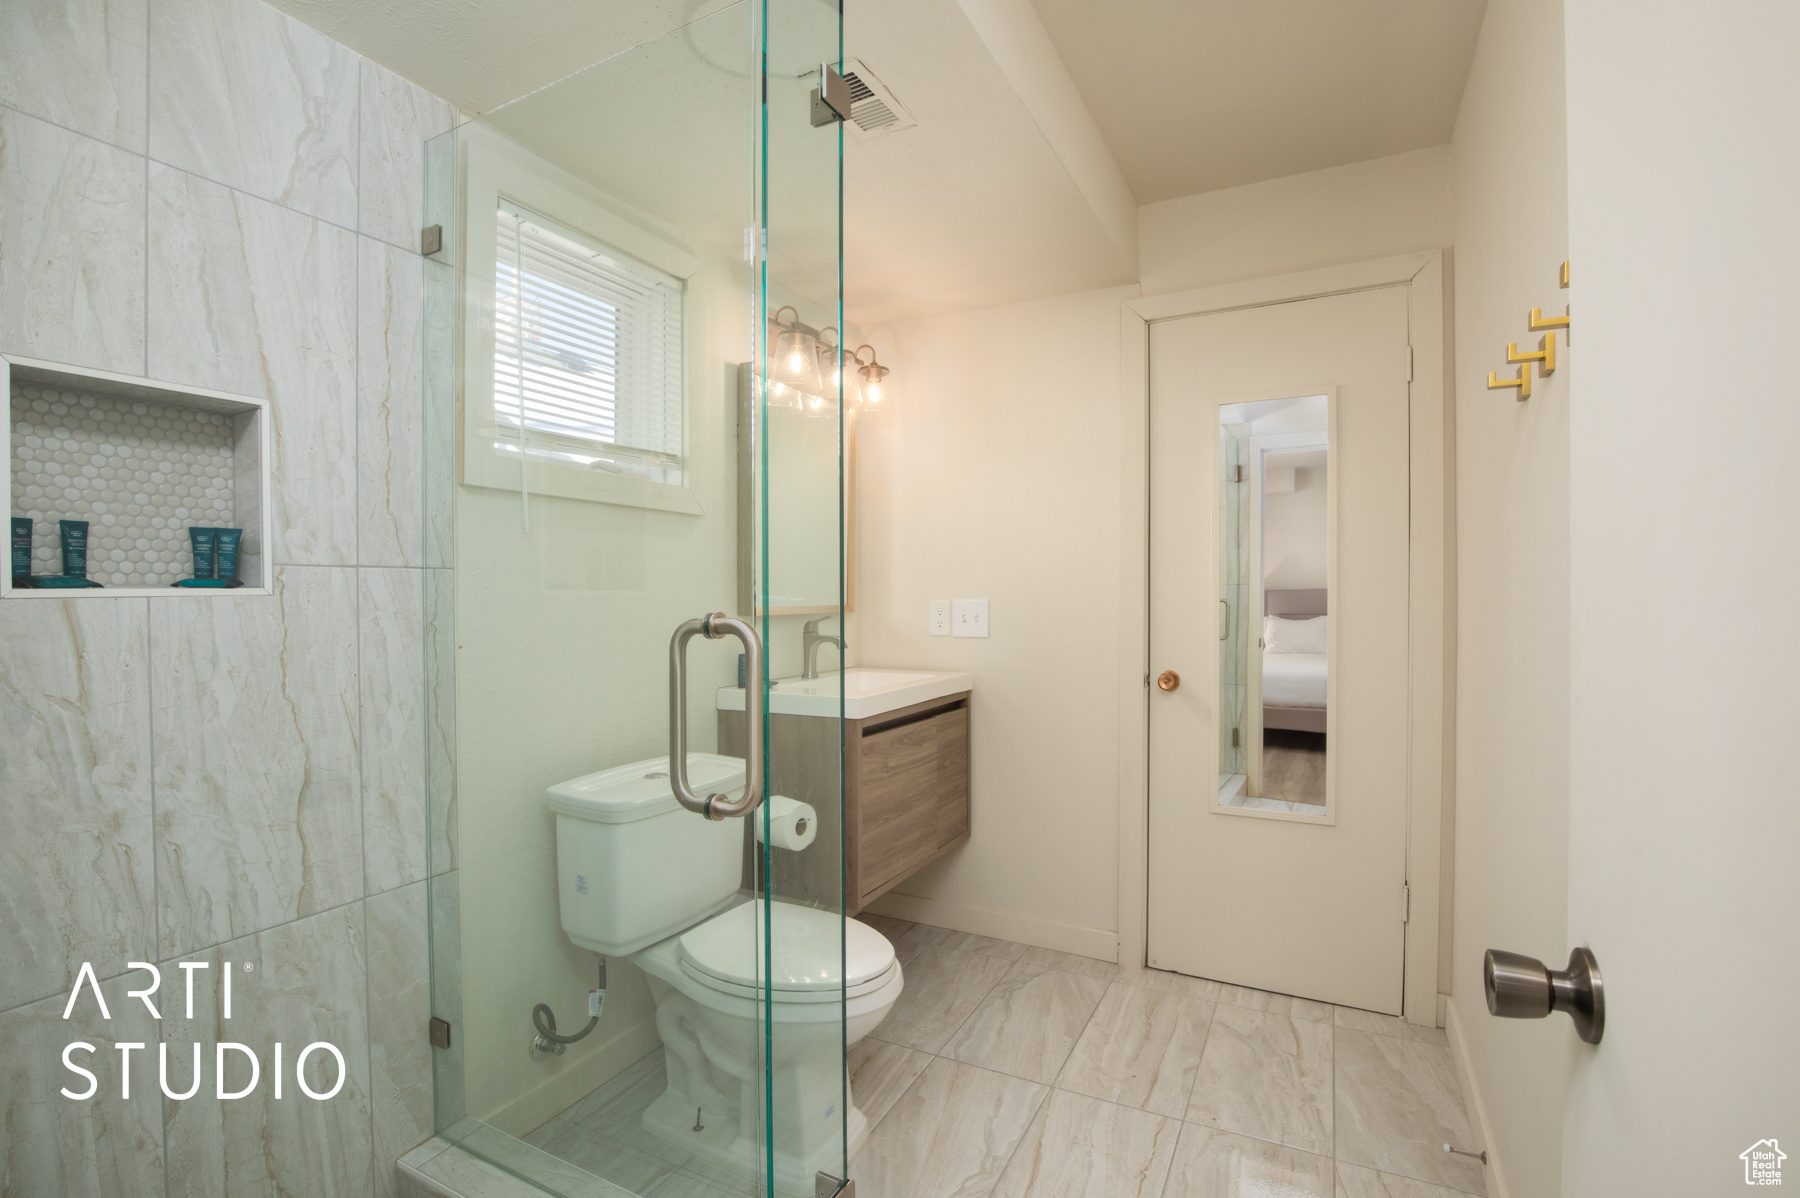 Bathroom featuring vanity, toilet, walk in shower, and tile floors